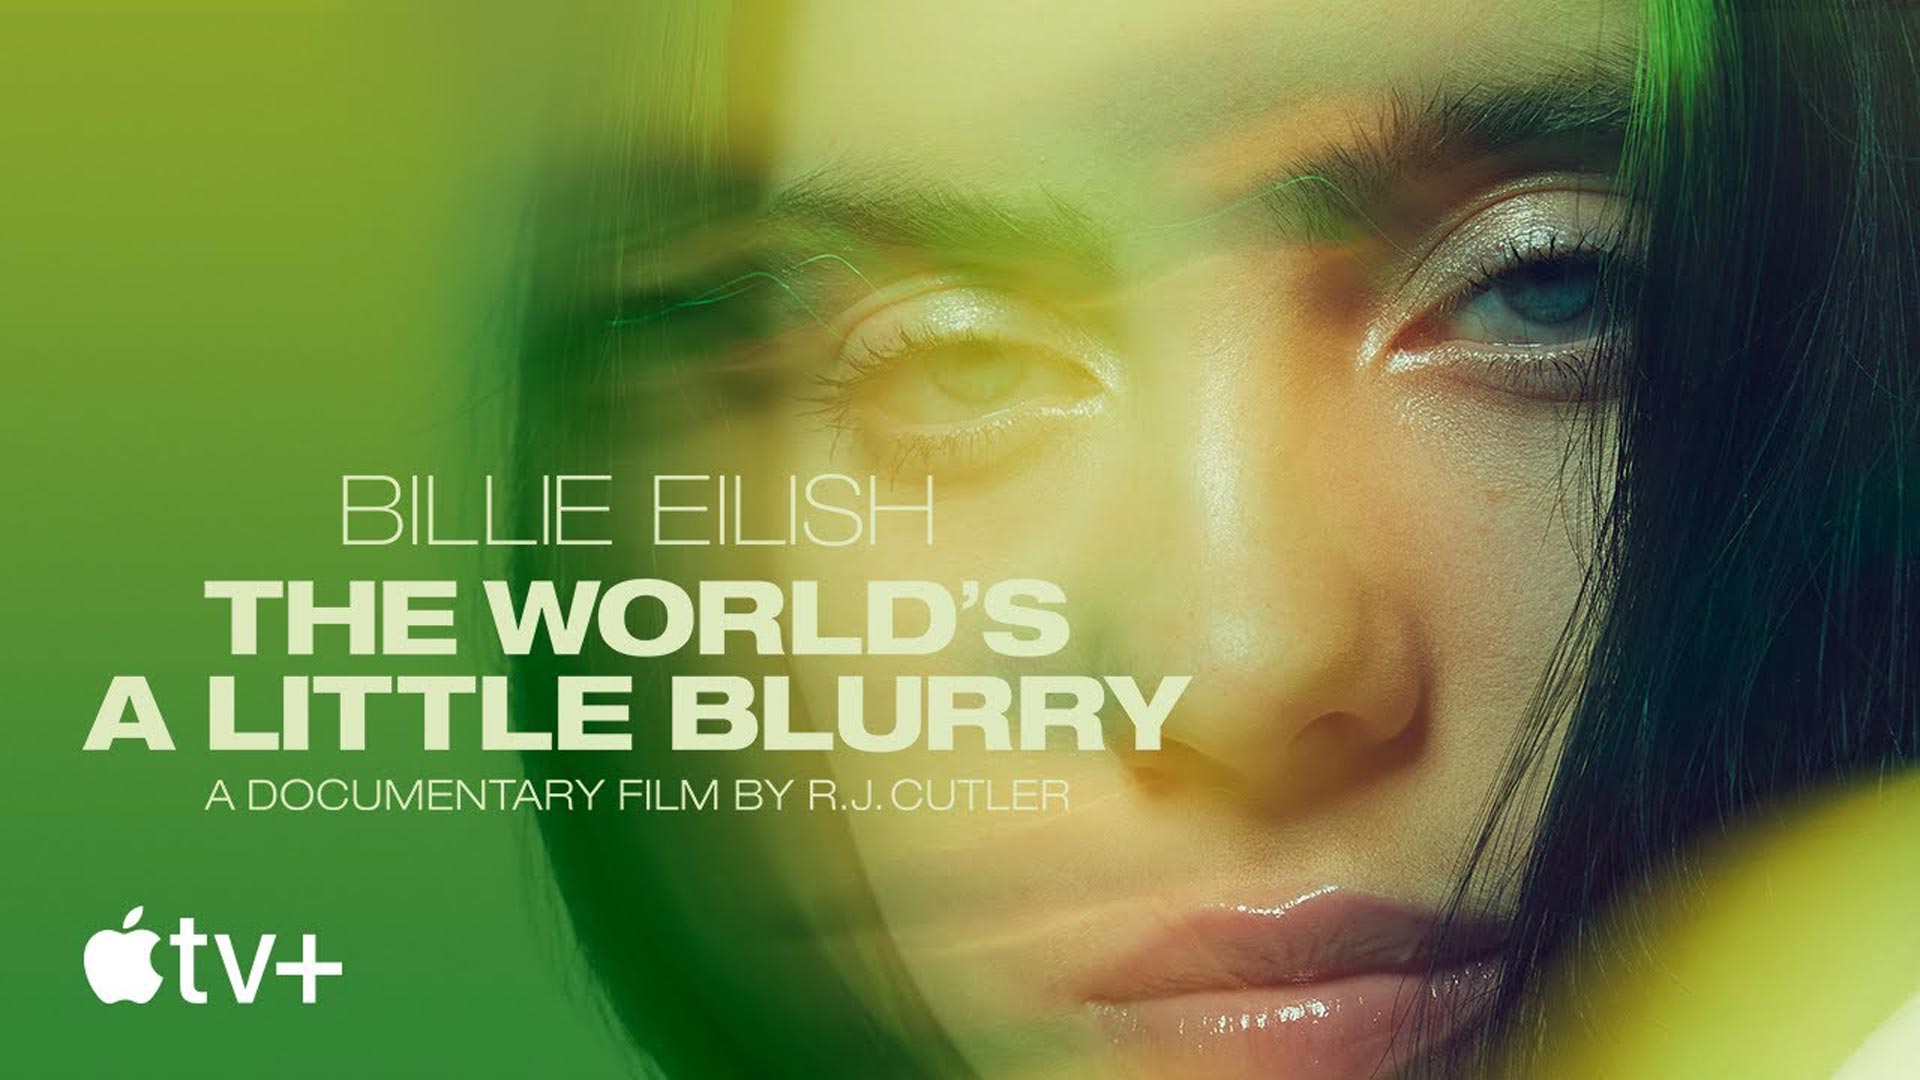 نقد مستند Billie Eilish: The World's a Little Blurry | تصویری متفاوت از بیلی آیلیش